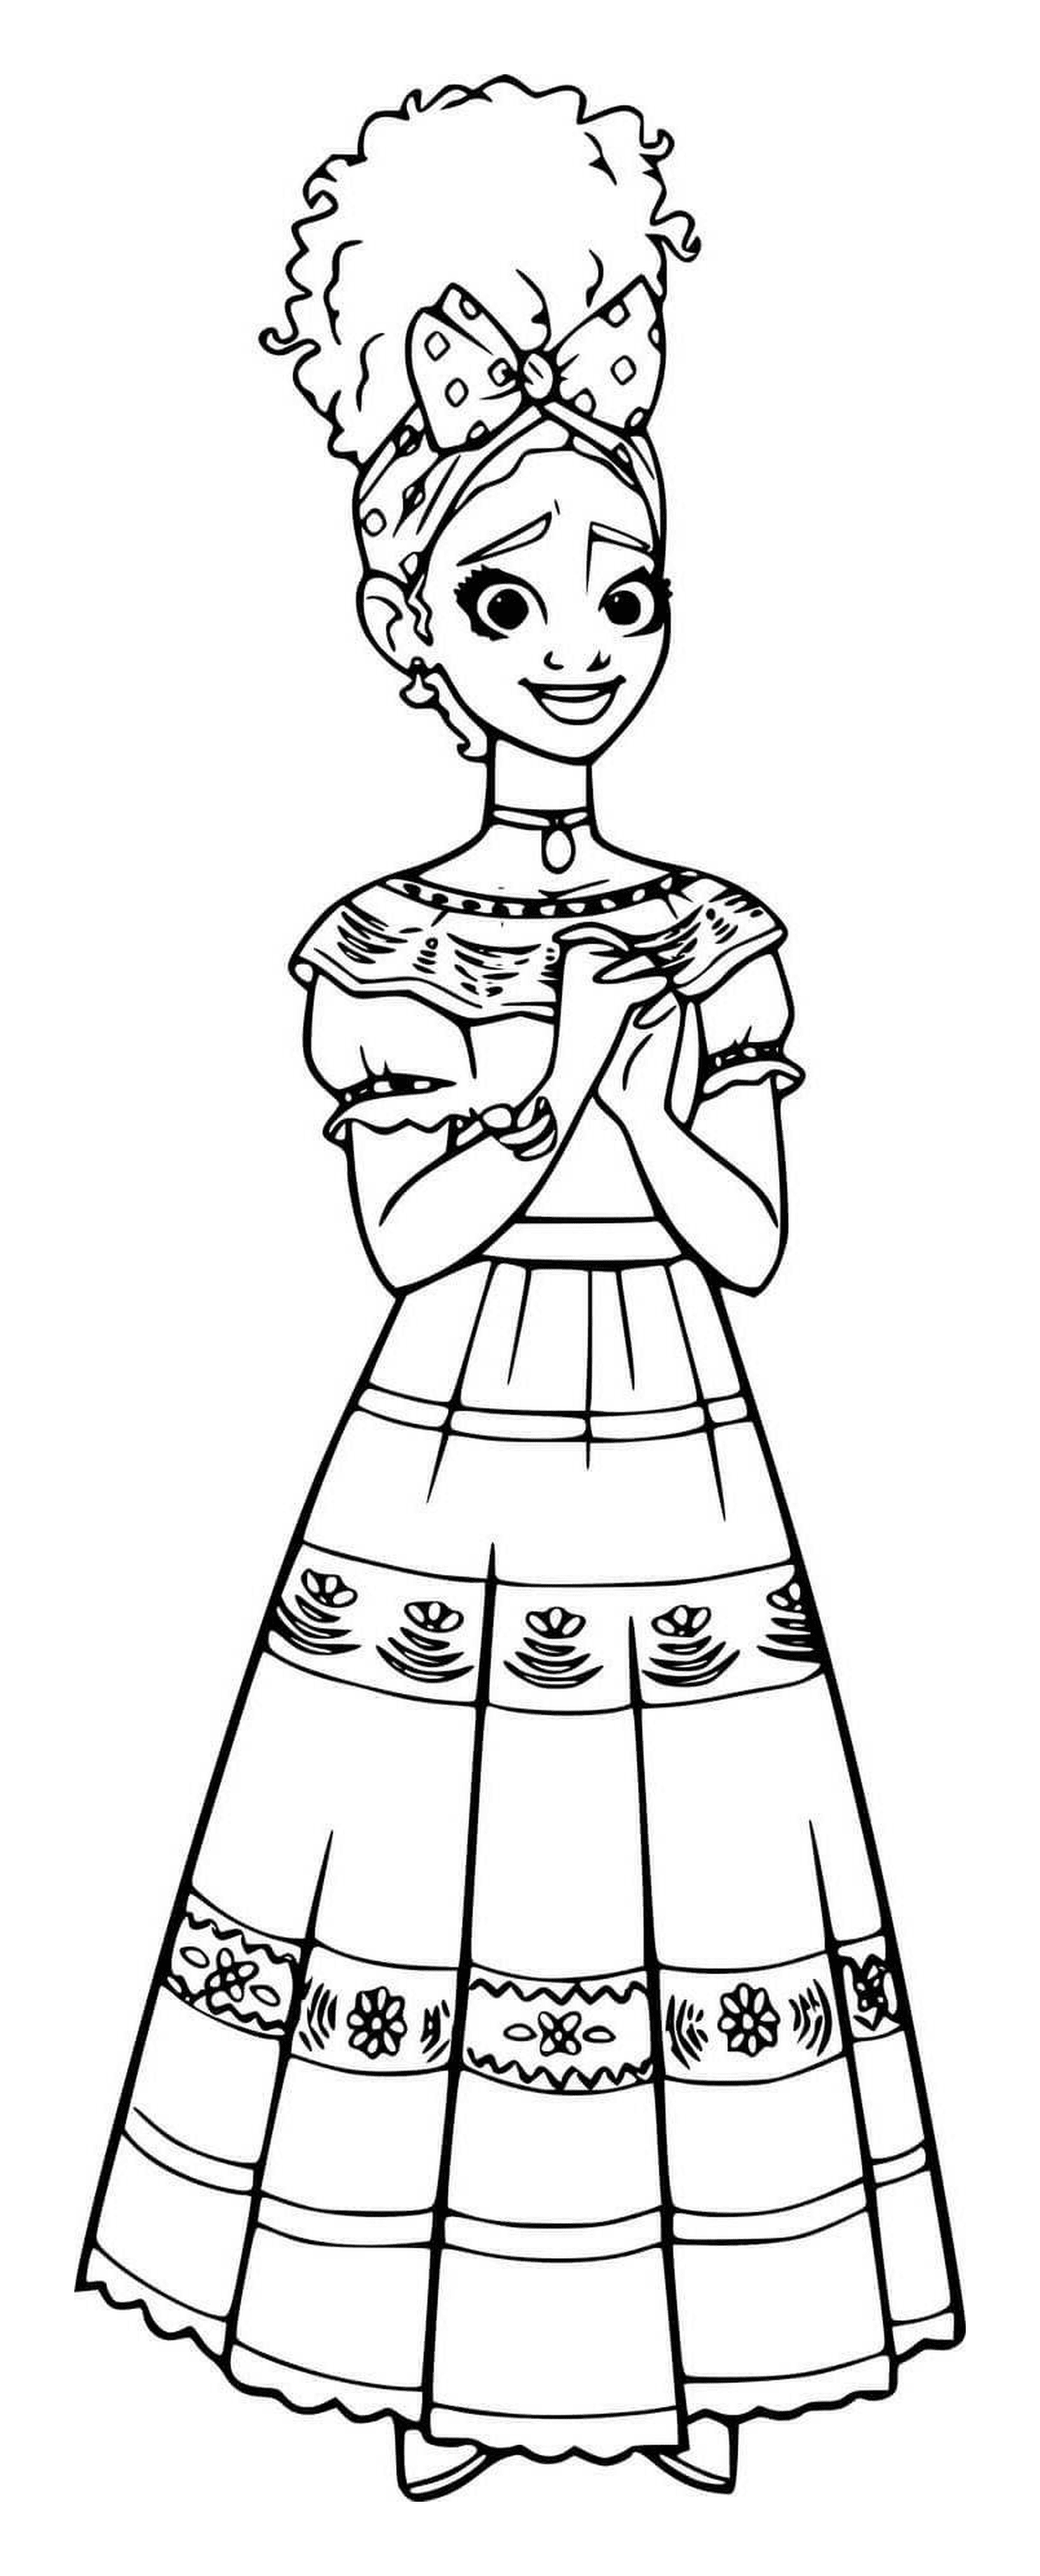  Dolores Madrigal em um vestido 